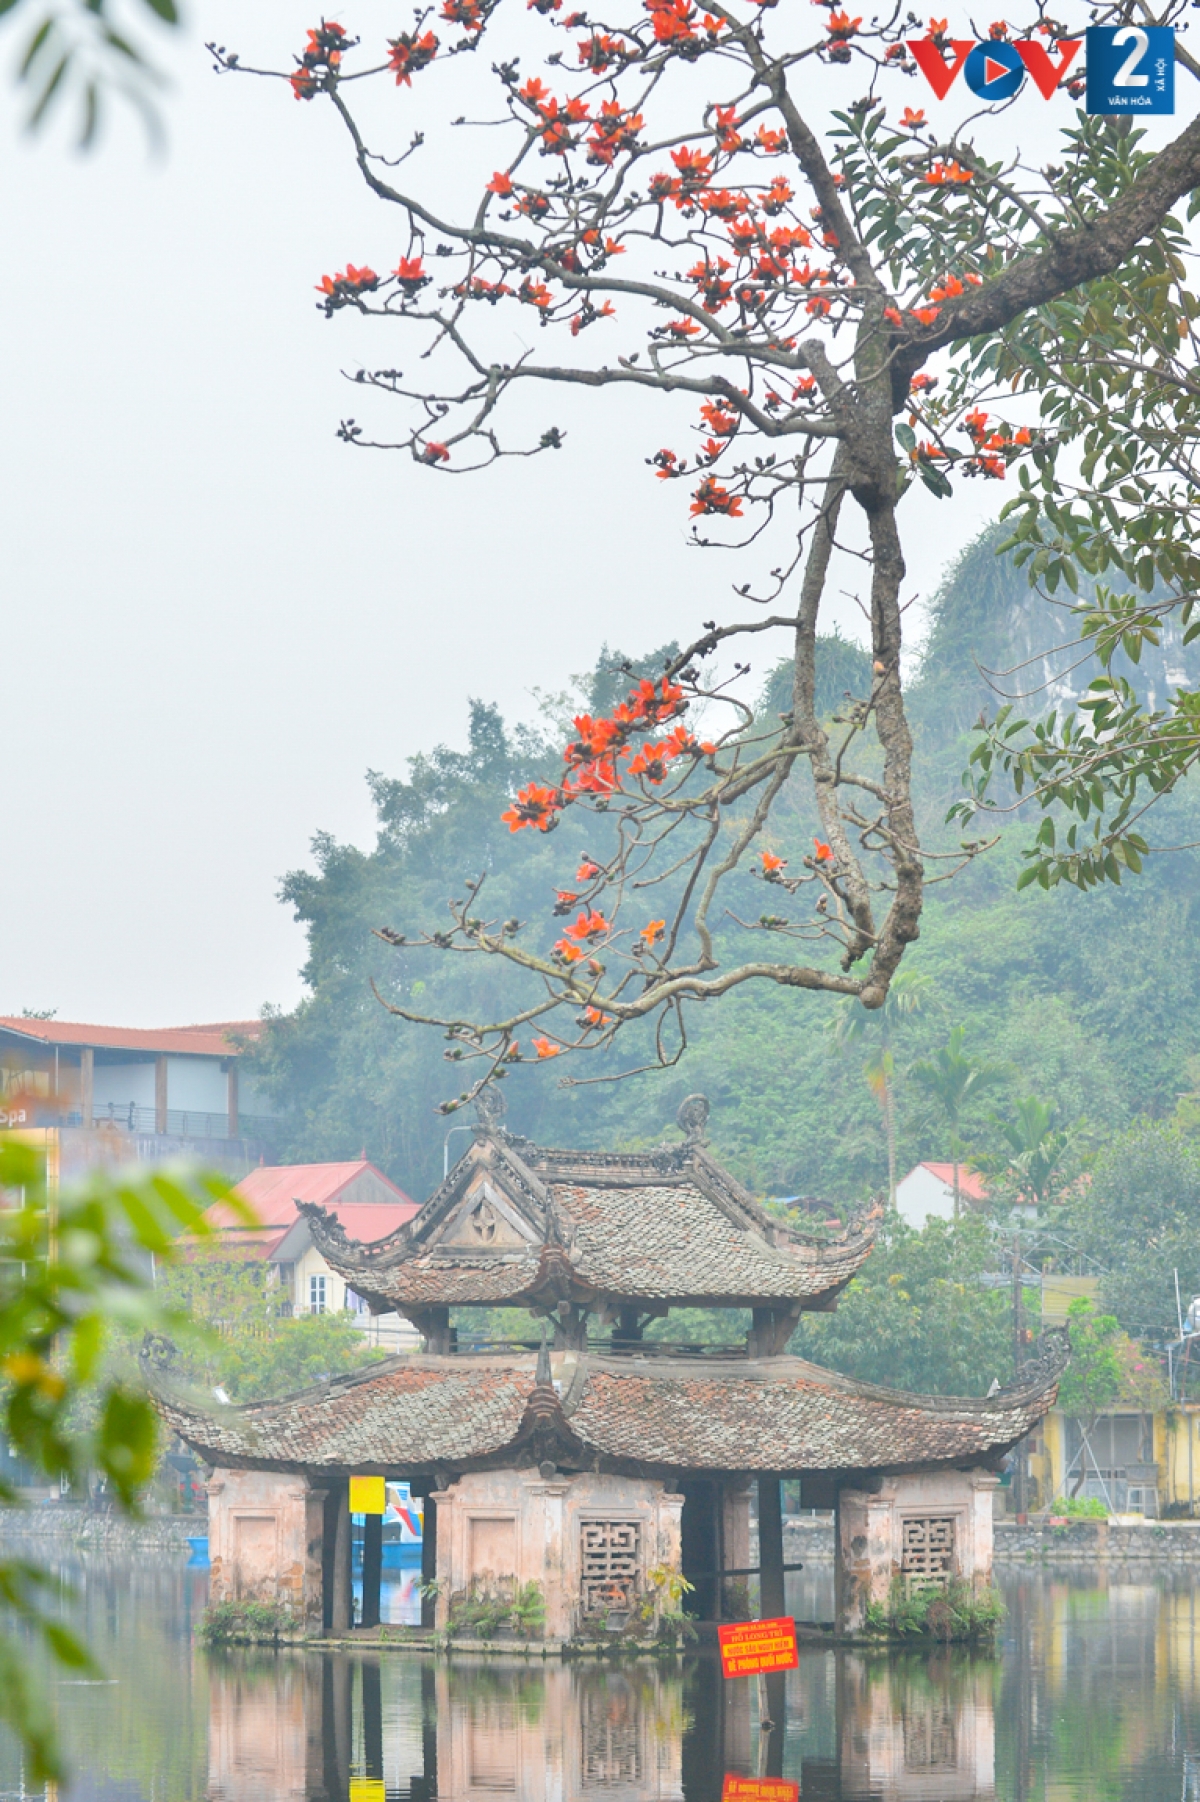 Rời nội thành về chùa Thầy (xã Sài Sơn, huyện Quốc Oai, TP Hà Nội) để ngắm cây gạo cổ thụ bắt đầu nở hoa. Một nét đẹp rất riêng trong không gian ngôi chùa cổ kính.